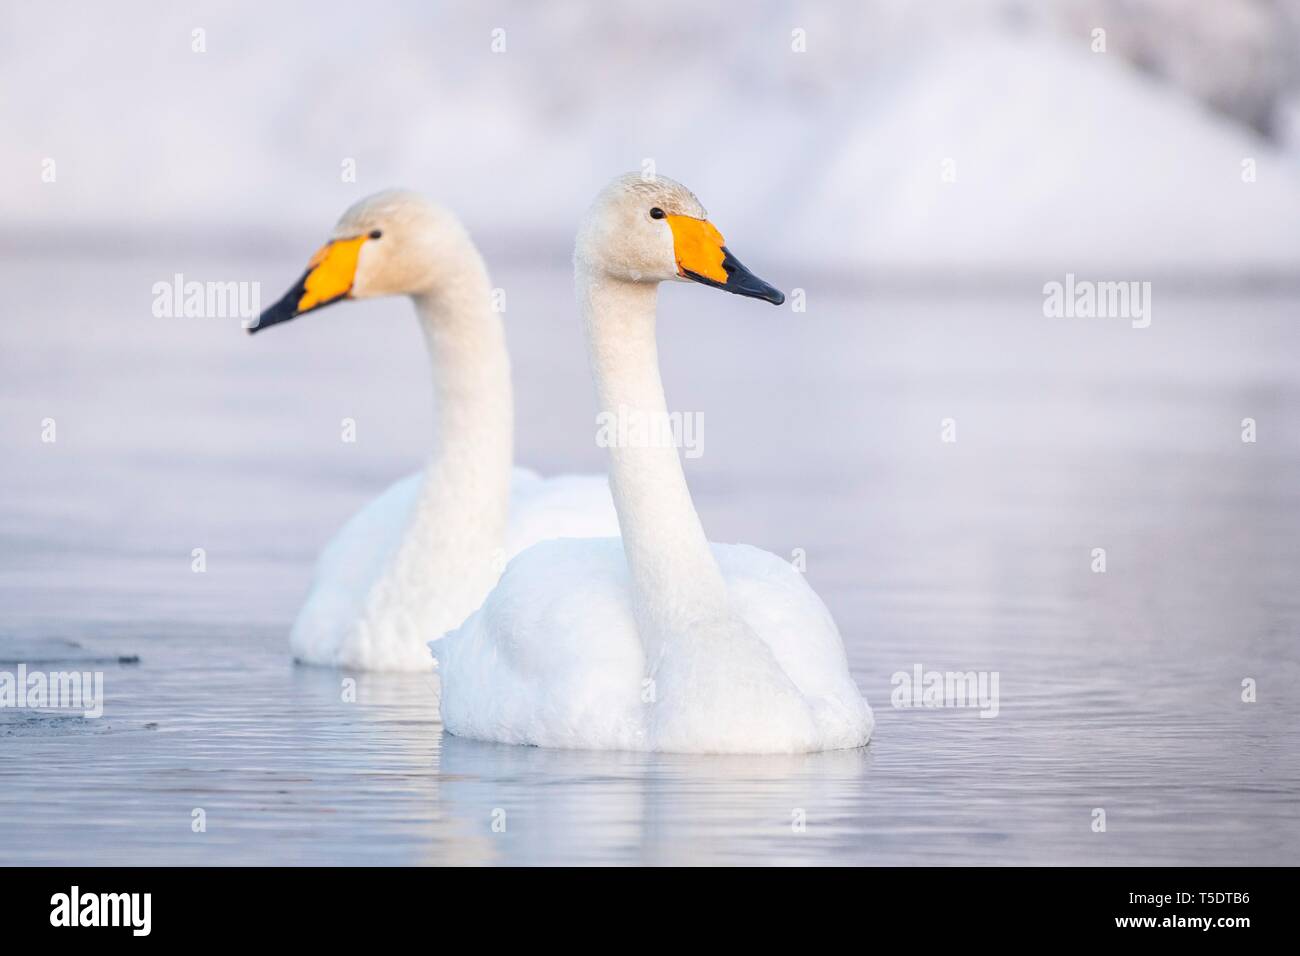 Deux cygnes chanteurs (Cygnus cygnus) Nager dans le lac en hiver, Muonio, Laponie, Finlande Banque D'Images